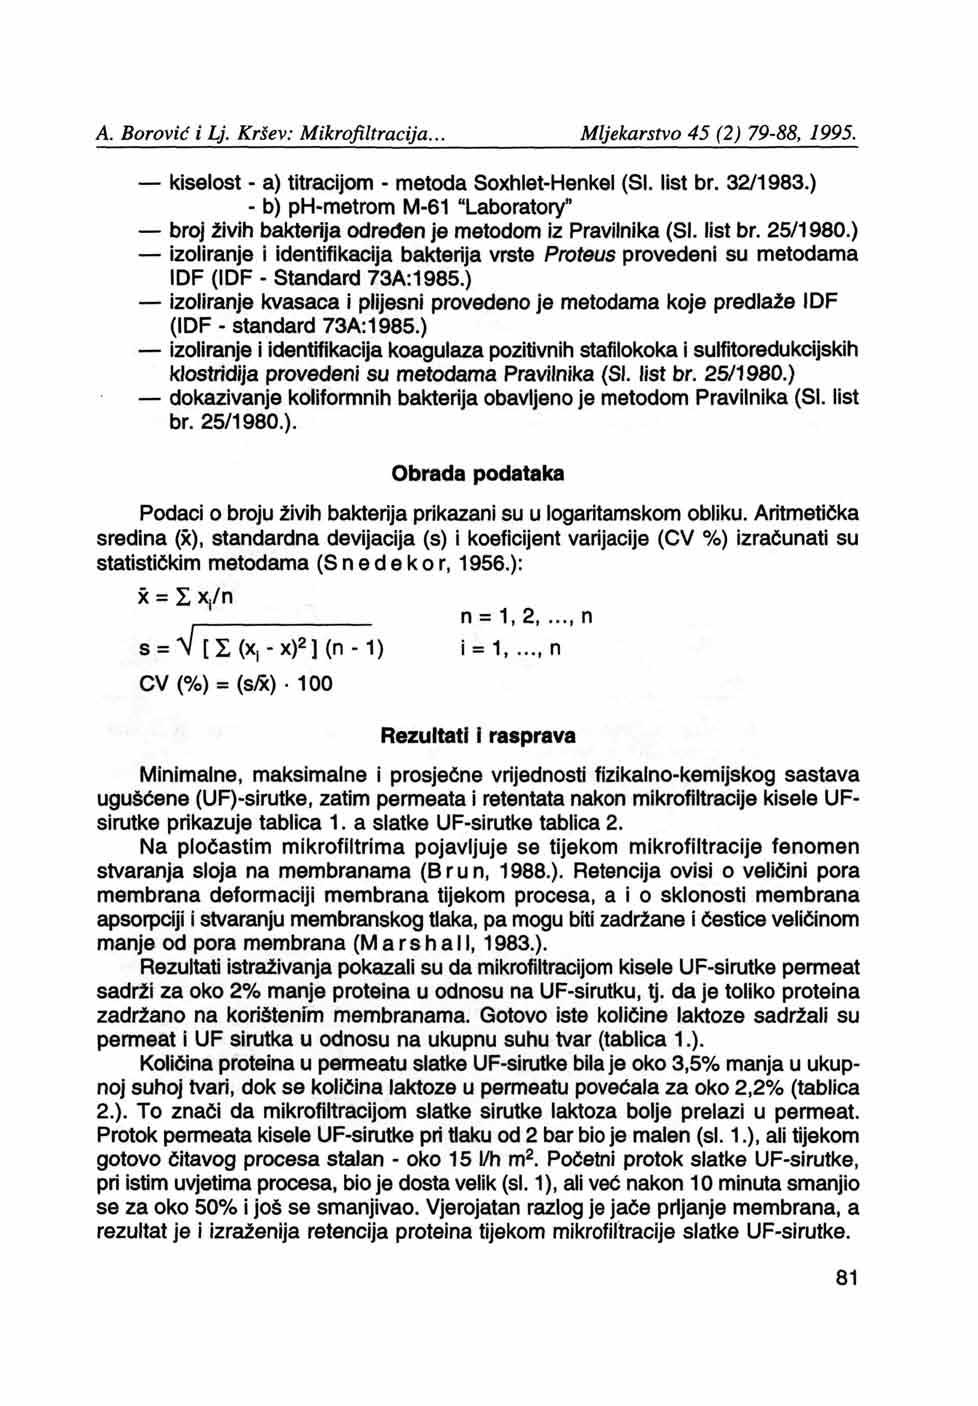 kiselost - a) titracijom - metoda Soxhiet-Henkel (SI. list br. 32/1983.) - b) ph-metrom M-61 "Laboratory" broj živih bakterija određen je metodom iz Pravilnika (SI. list br. 25/1980.